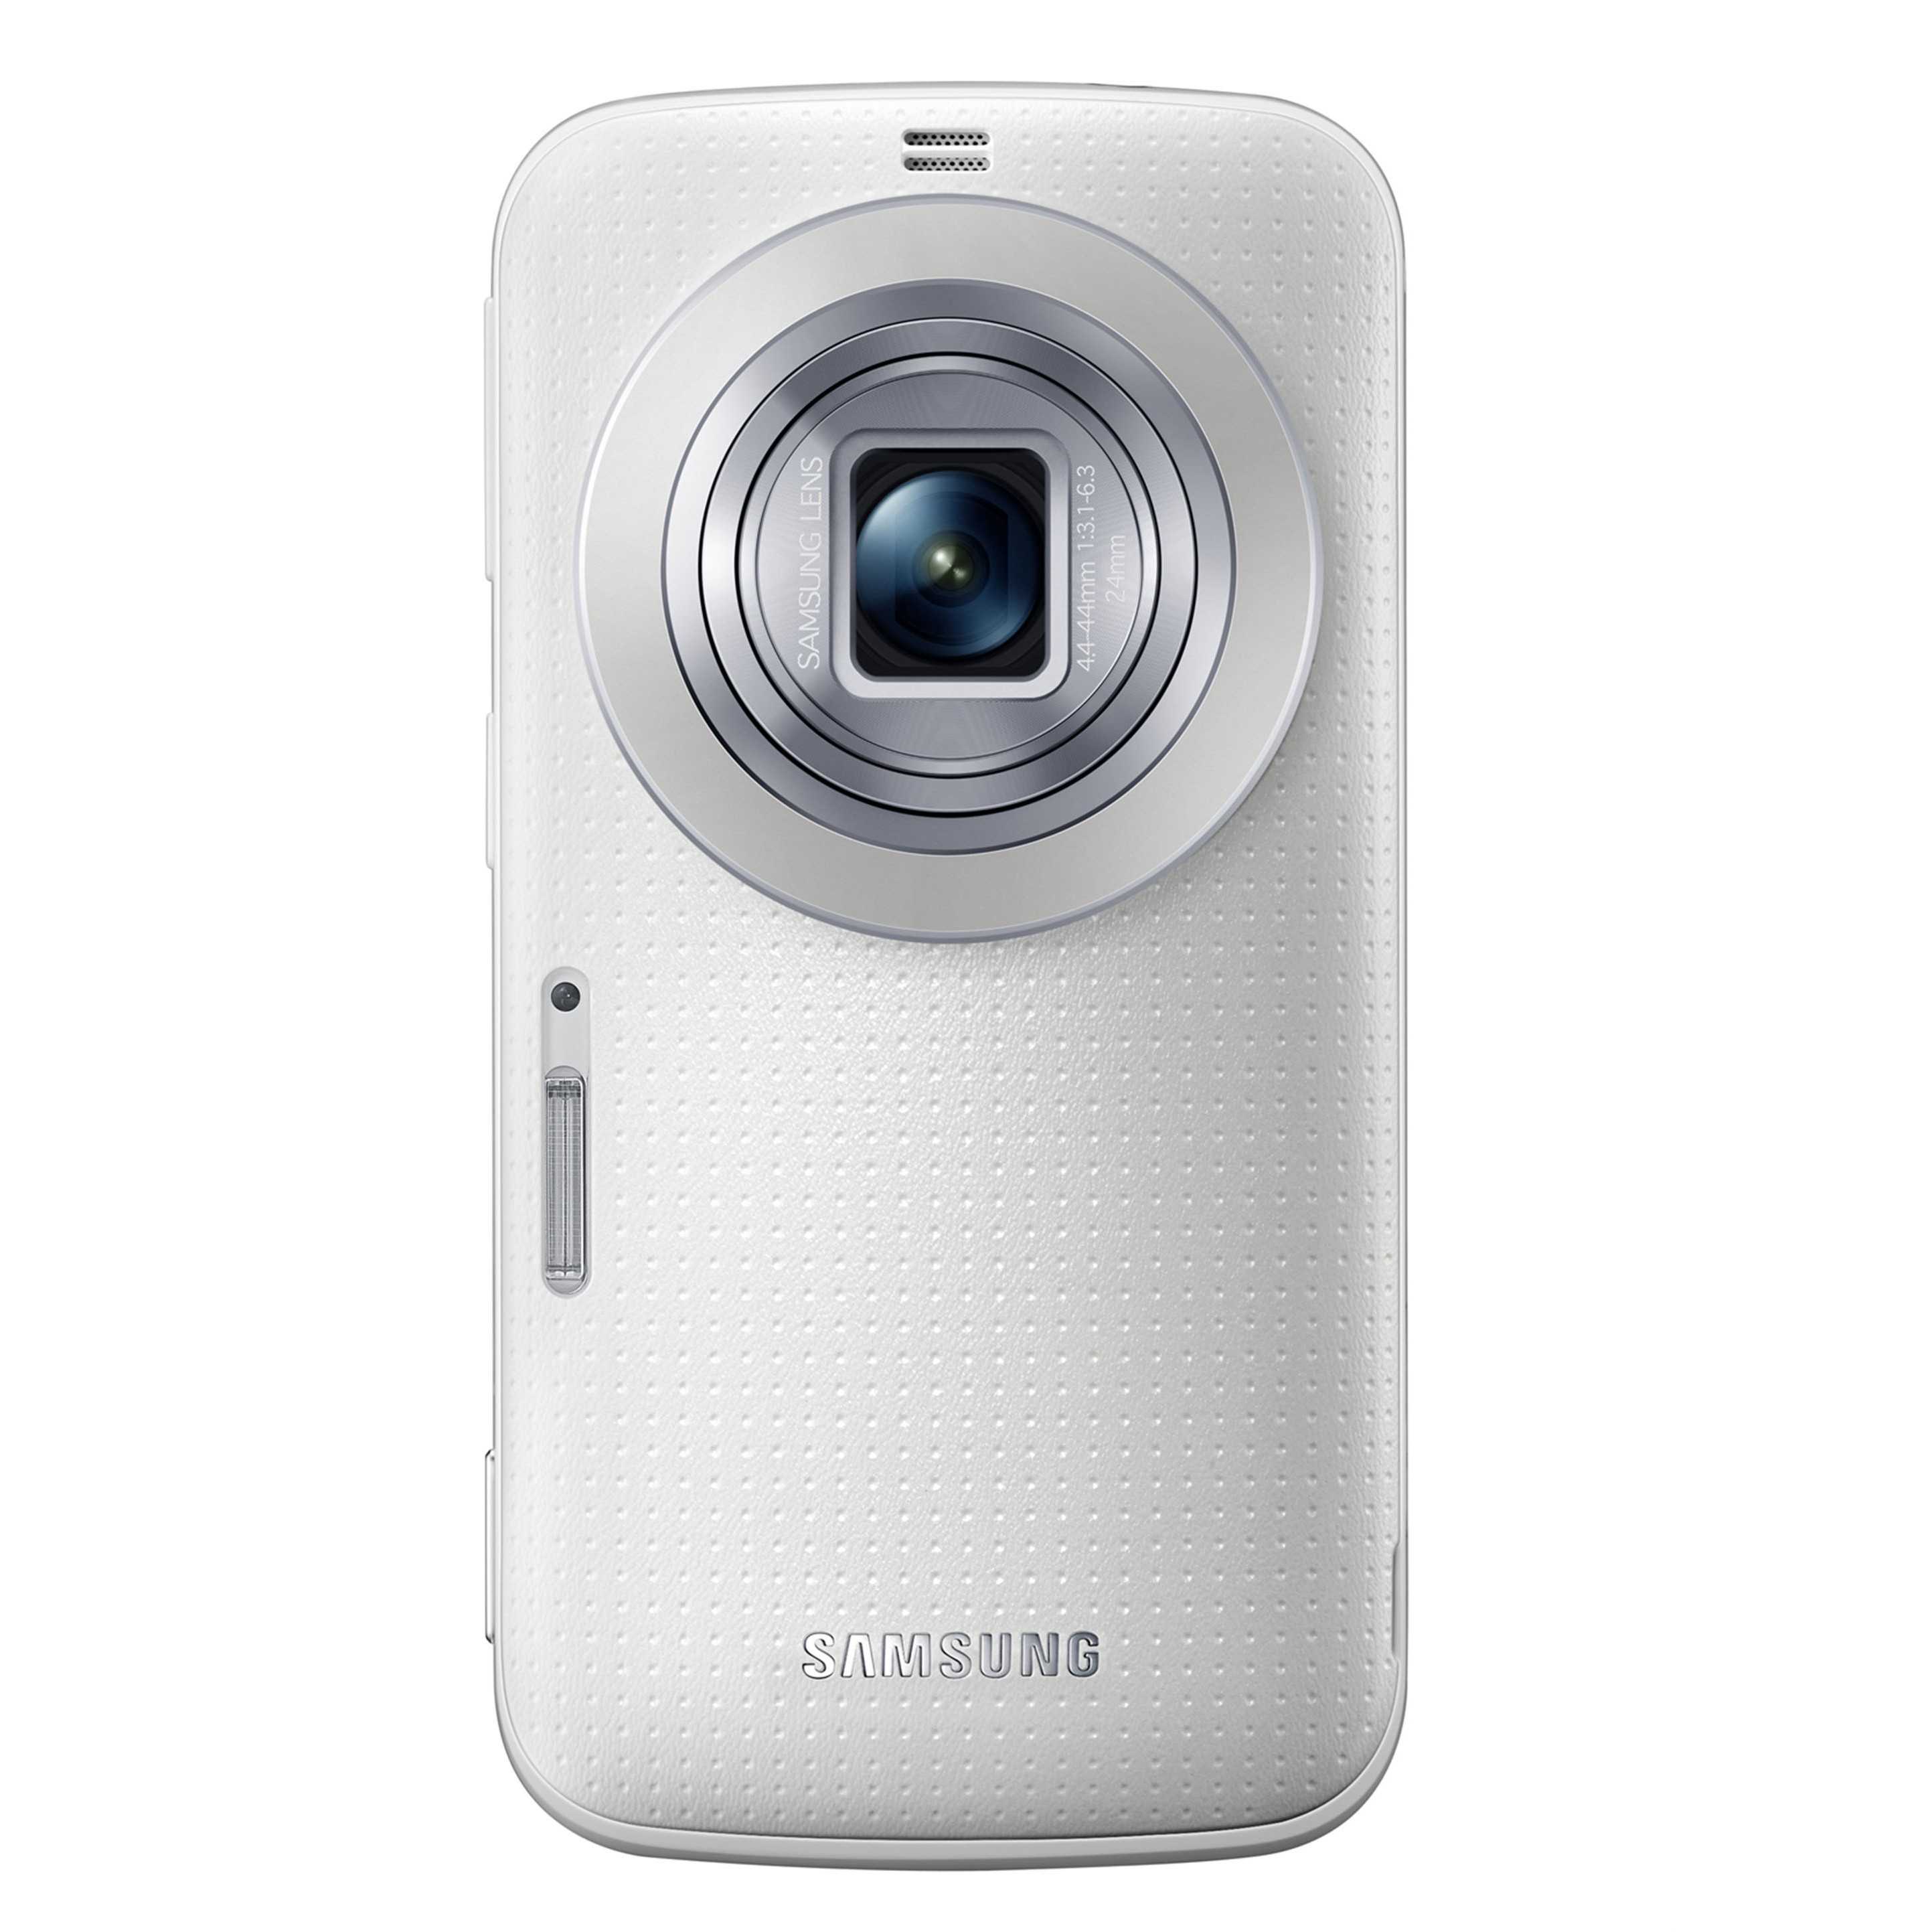 Обзор samsung galaxy s4 zoom – тест гибридного смартфона с функциями фотоаппарата и видеокамеры, функции, интерфейс, отзывы и впечатления, как снимает galaxy s4 zoom, тестовые снимки, примеры видео.